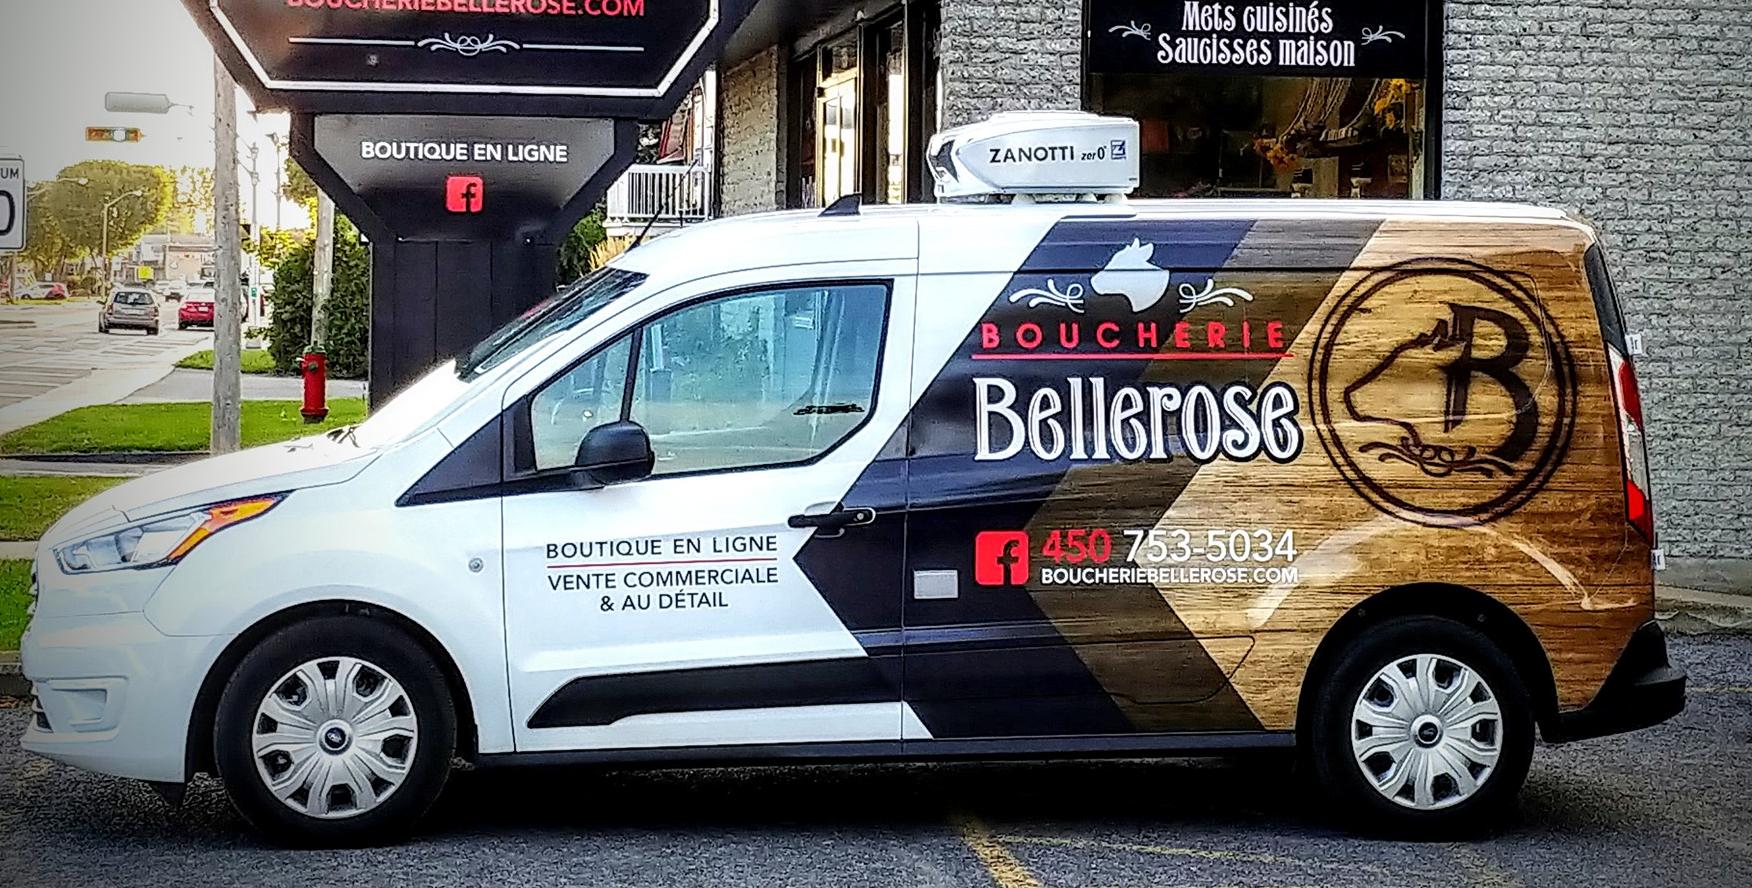 Boucherie Bellerose - Vente Commerciale et au Détail